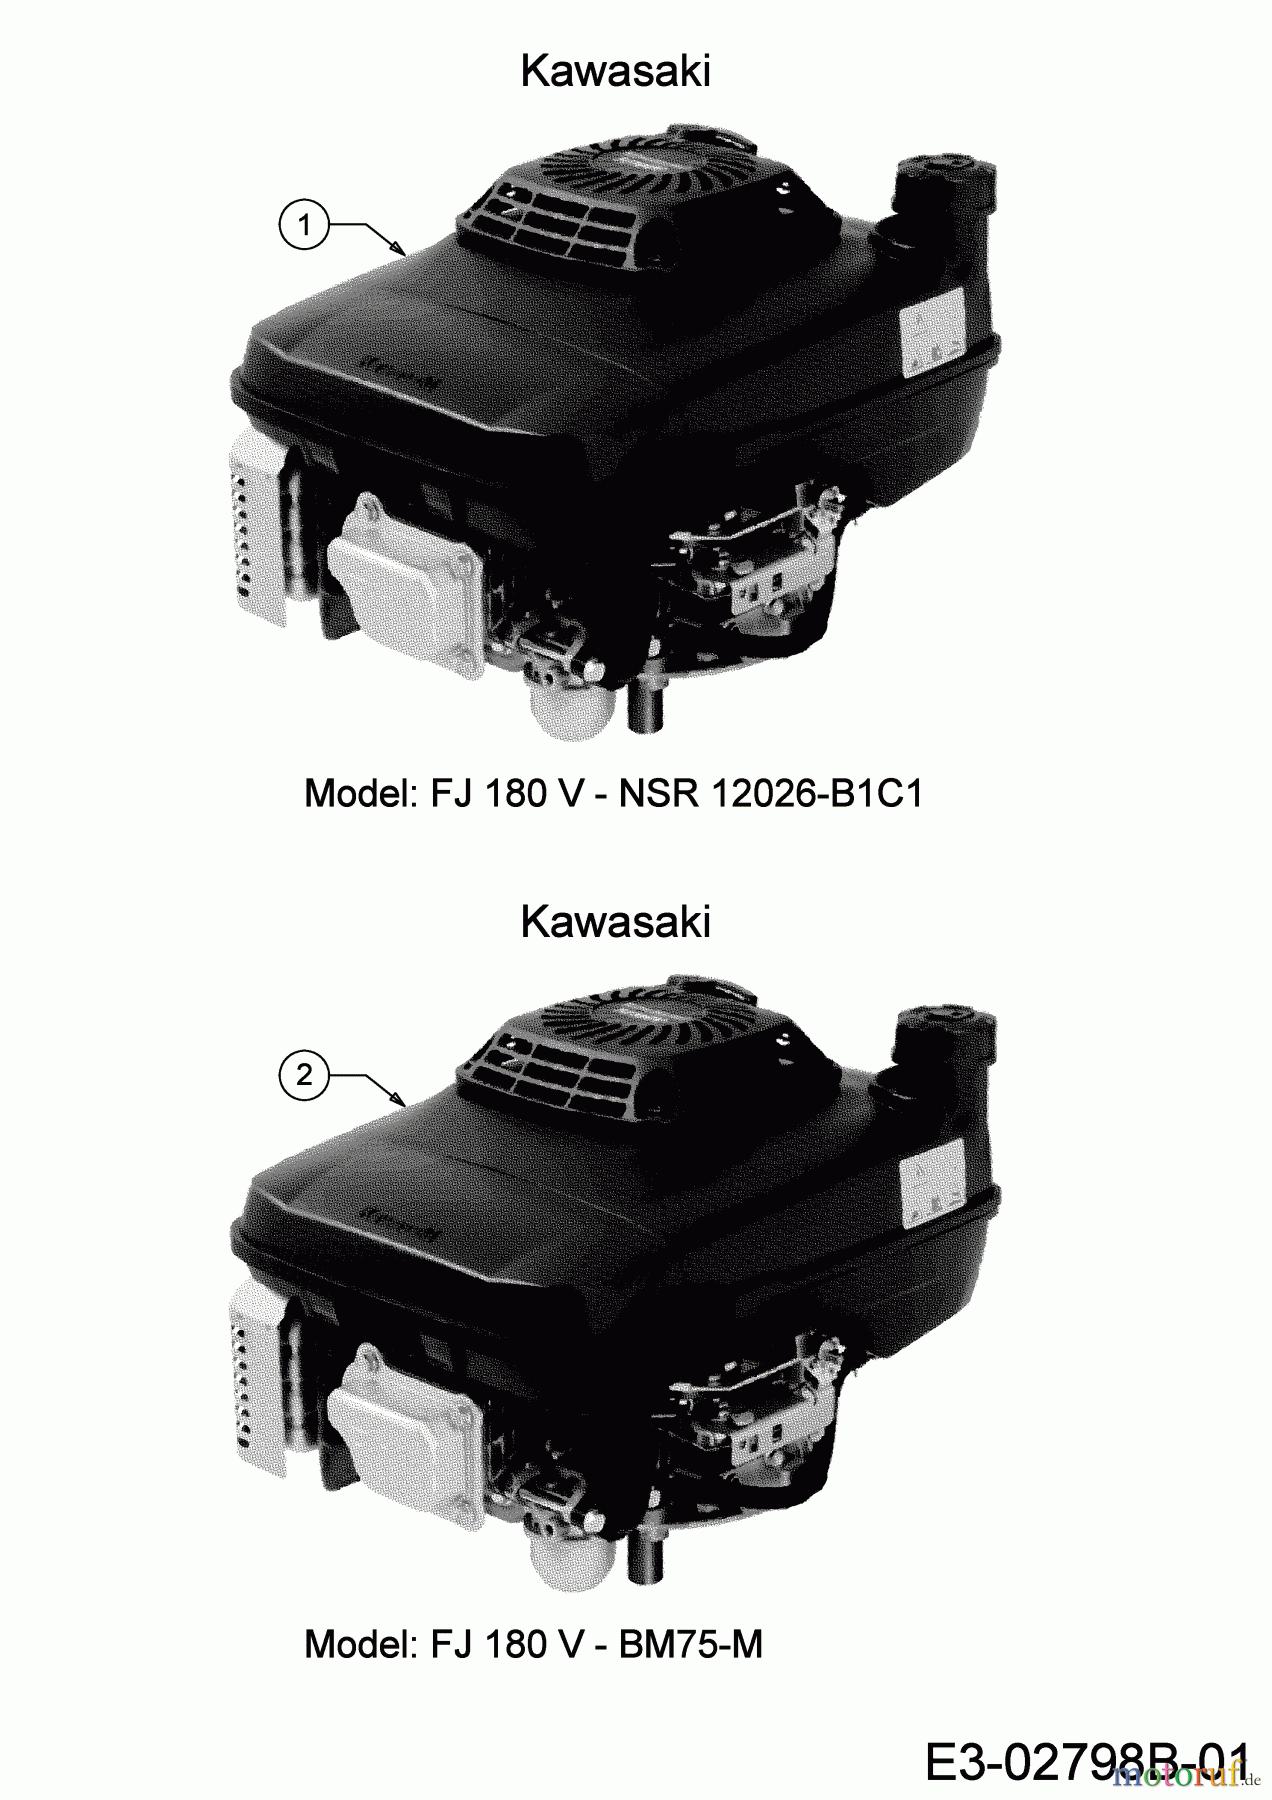  MTD Motormäher mit Antrieb Advance 53 SPKHW 12C-PN7D600 (2019) Motor Kawasaki